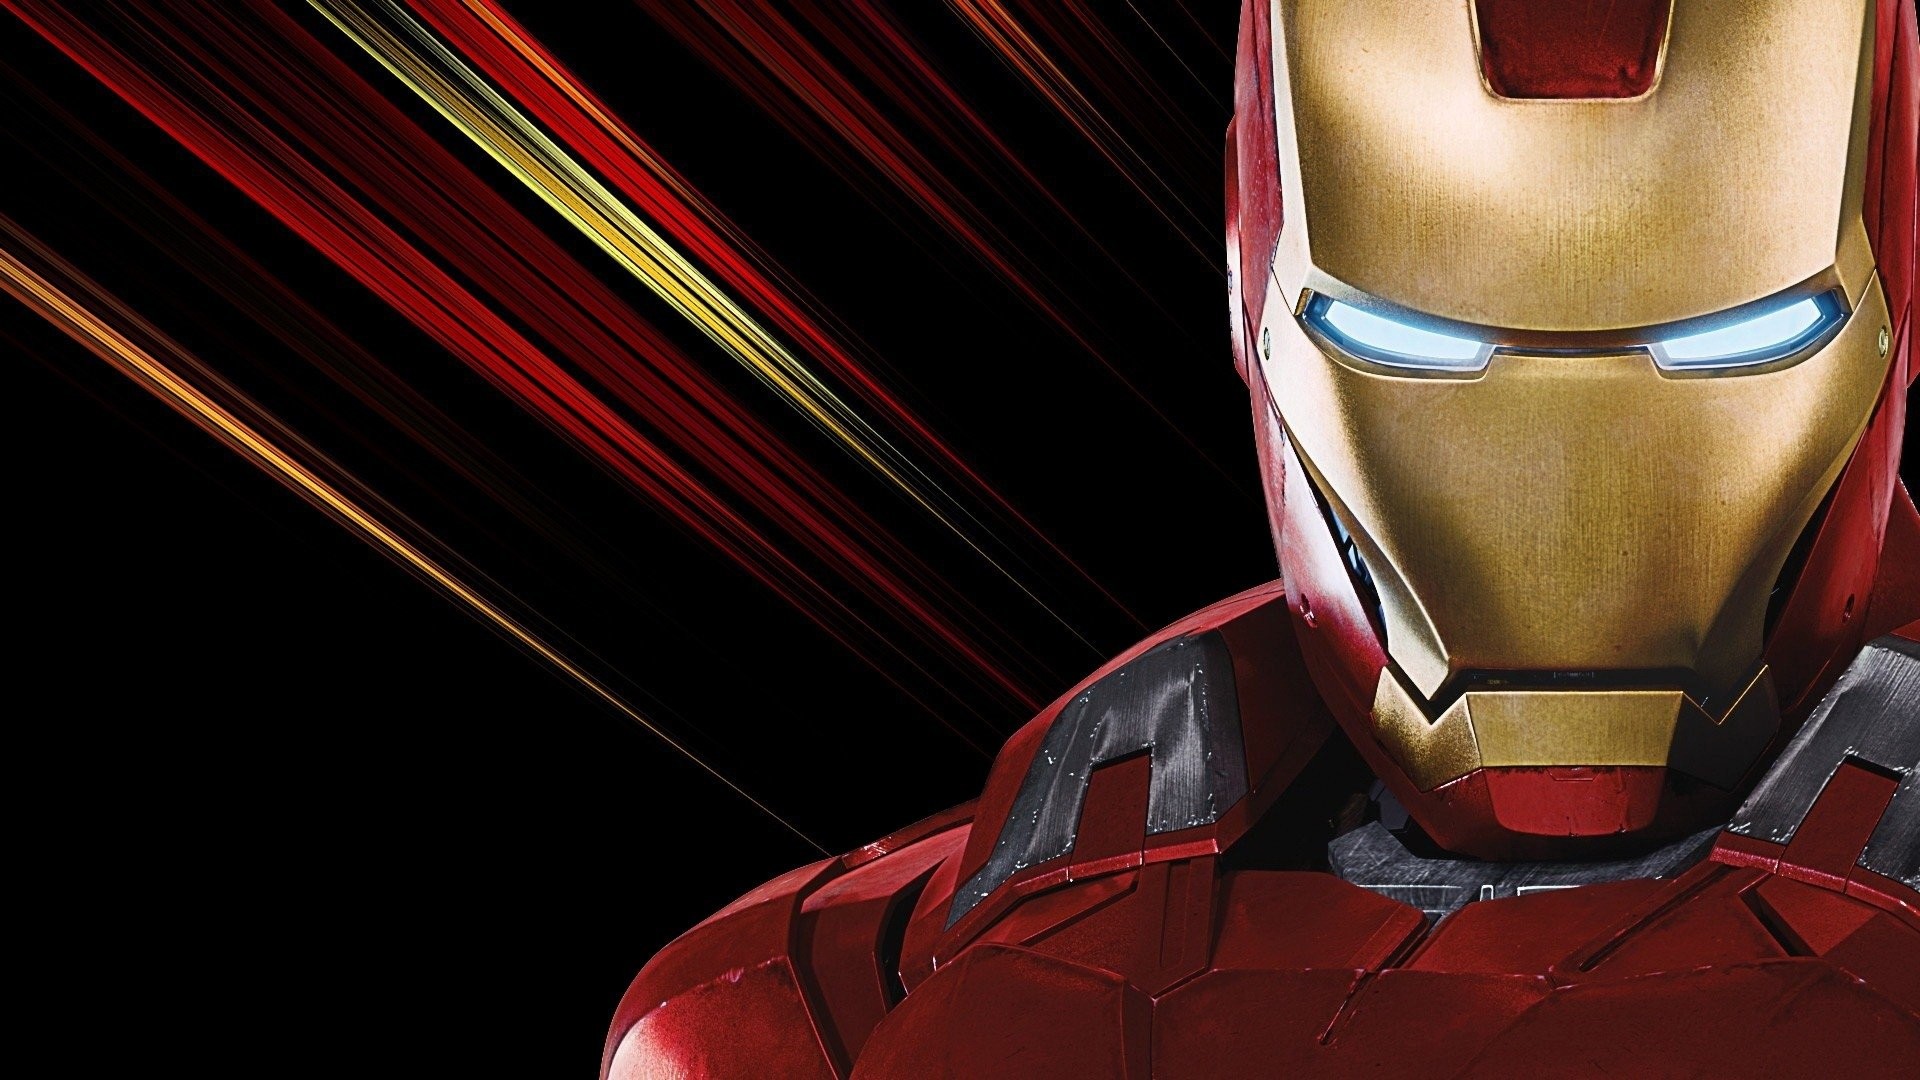 Hd Wallpaper - Iron Man Wallpaper The Avenger - HD Wallpaper 